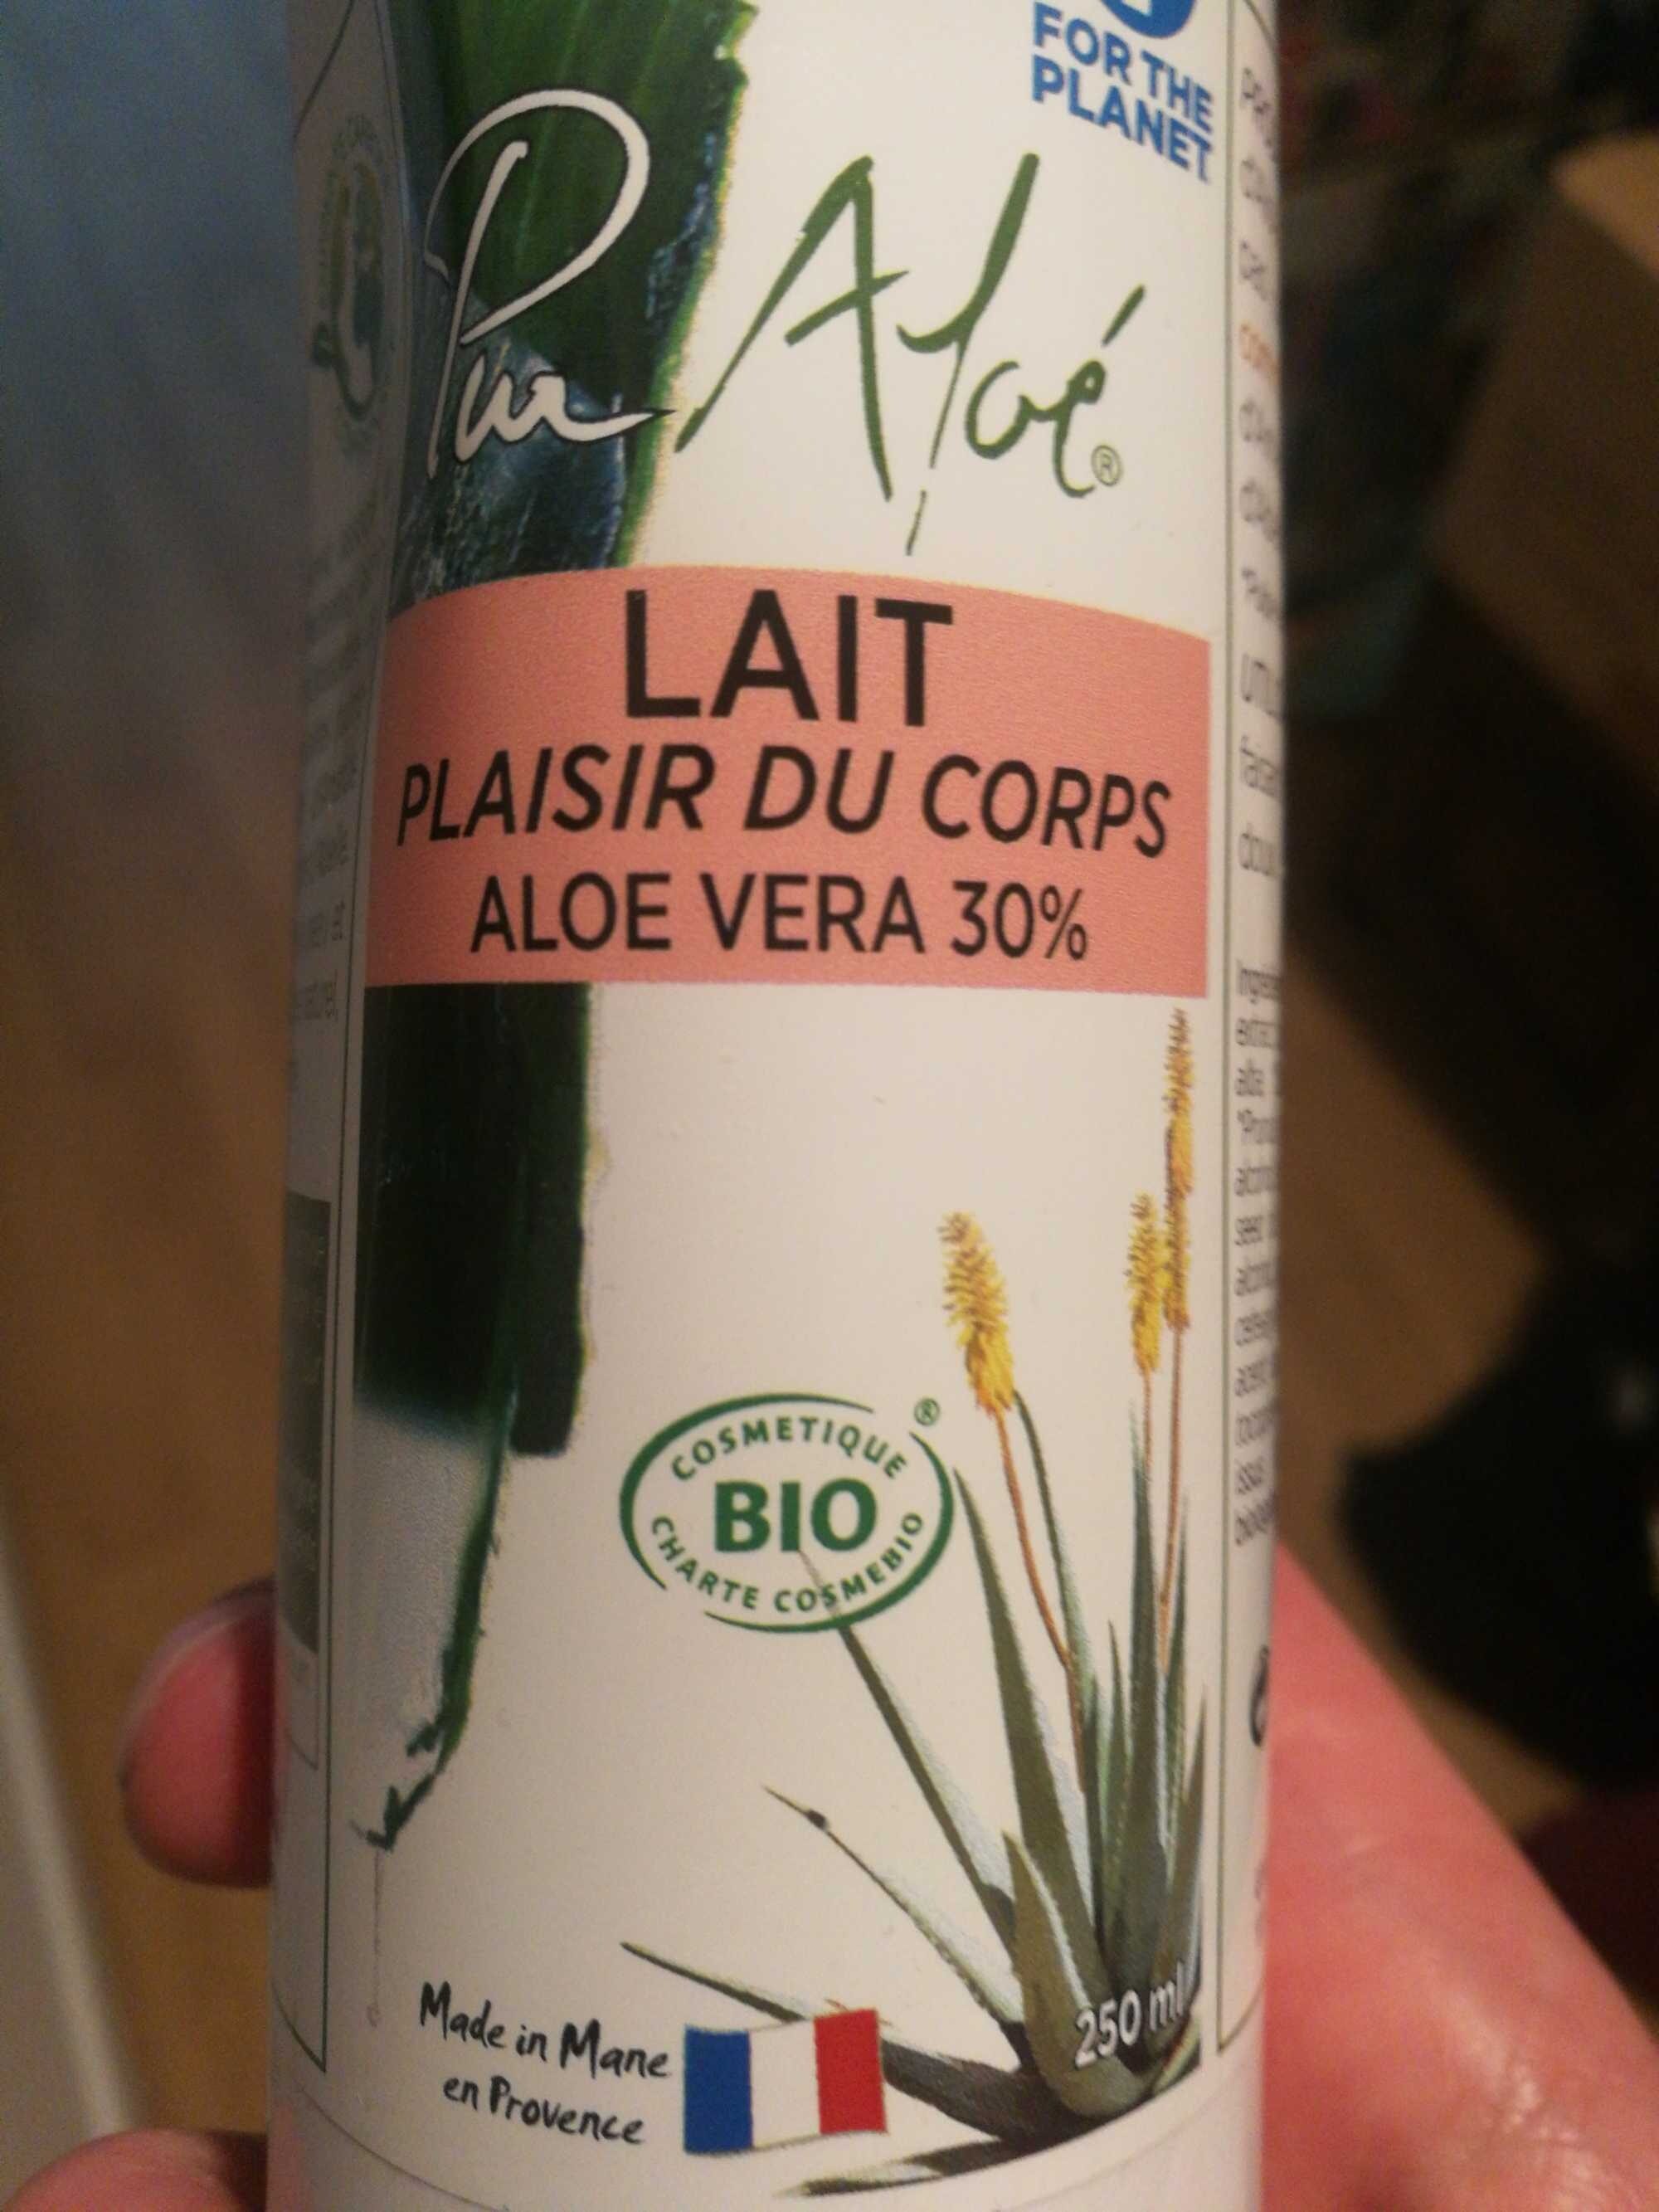 Lait plaisir du corps Aloe Vera 30% - Product - fr